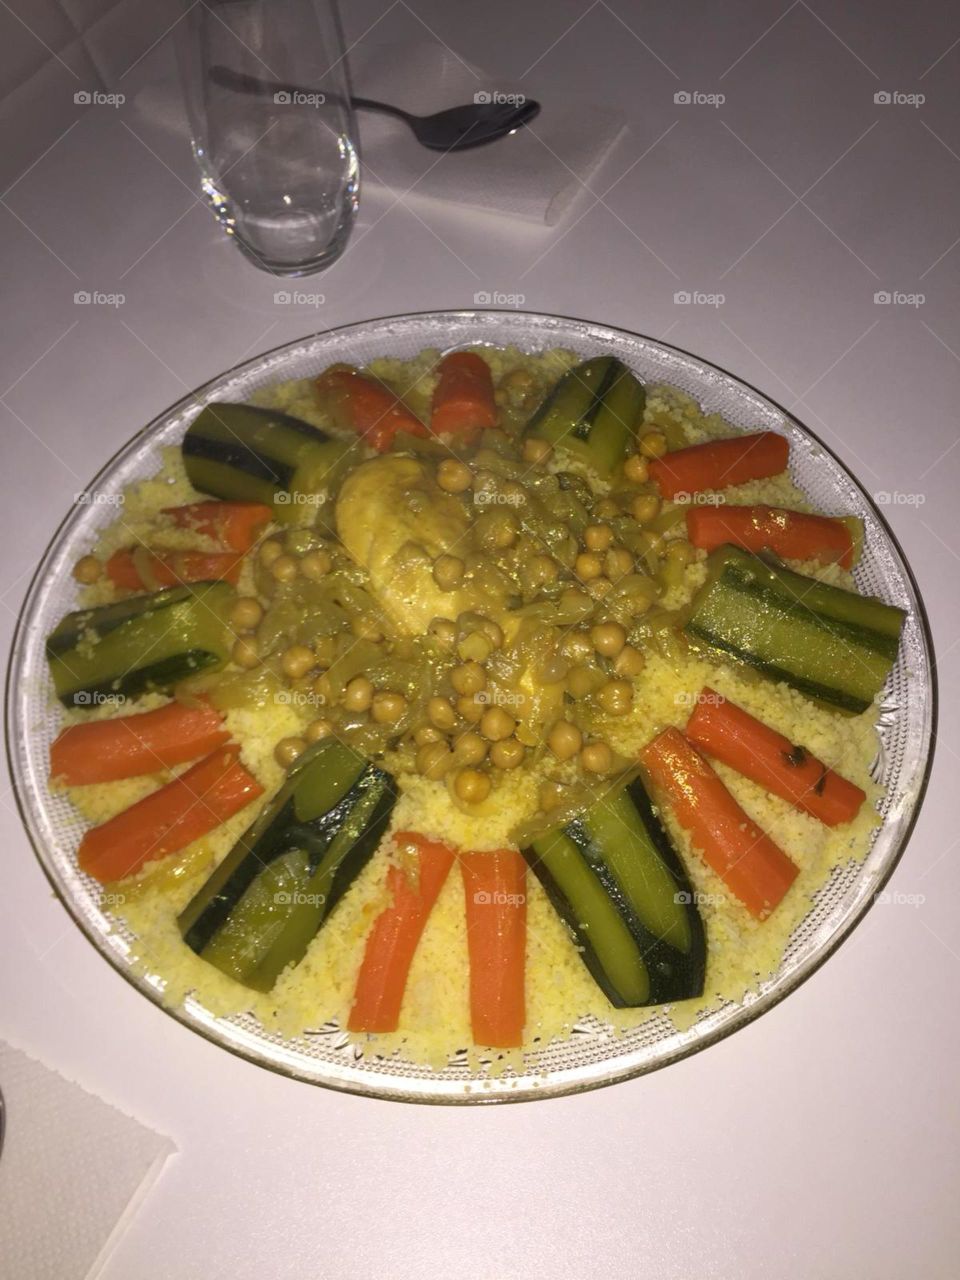 Marocaine couscous 